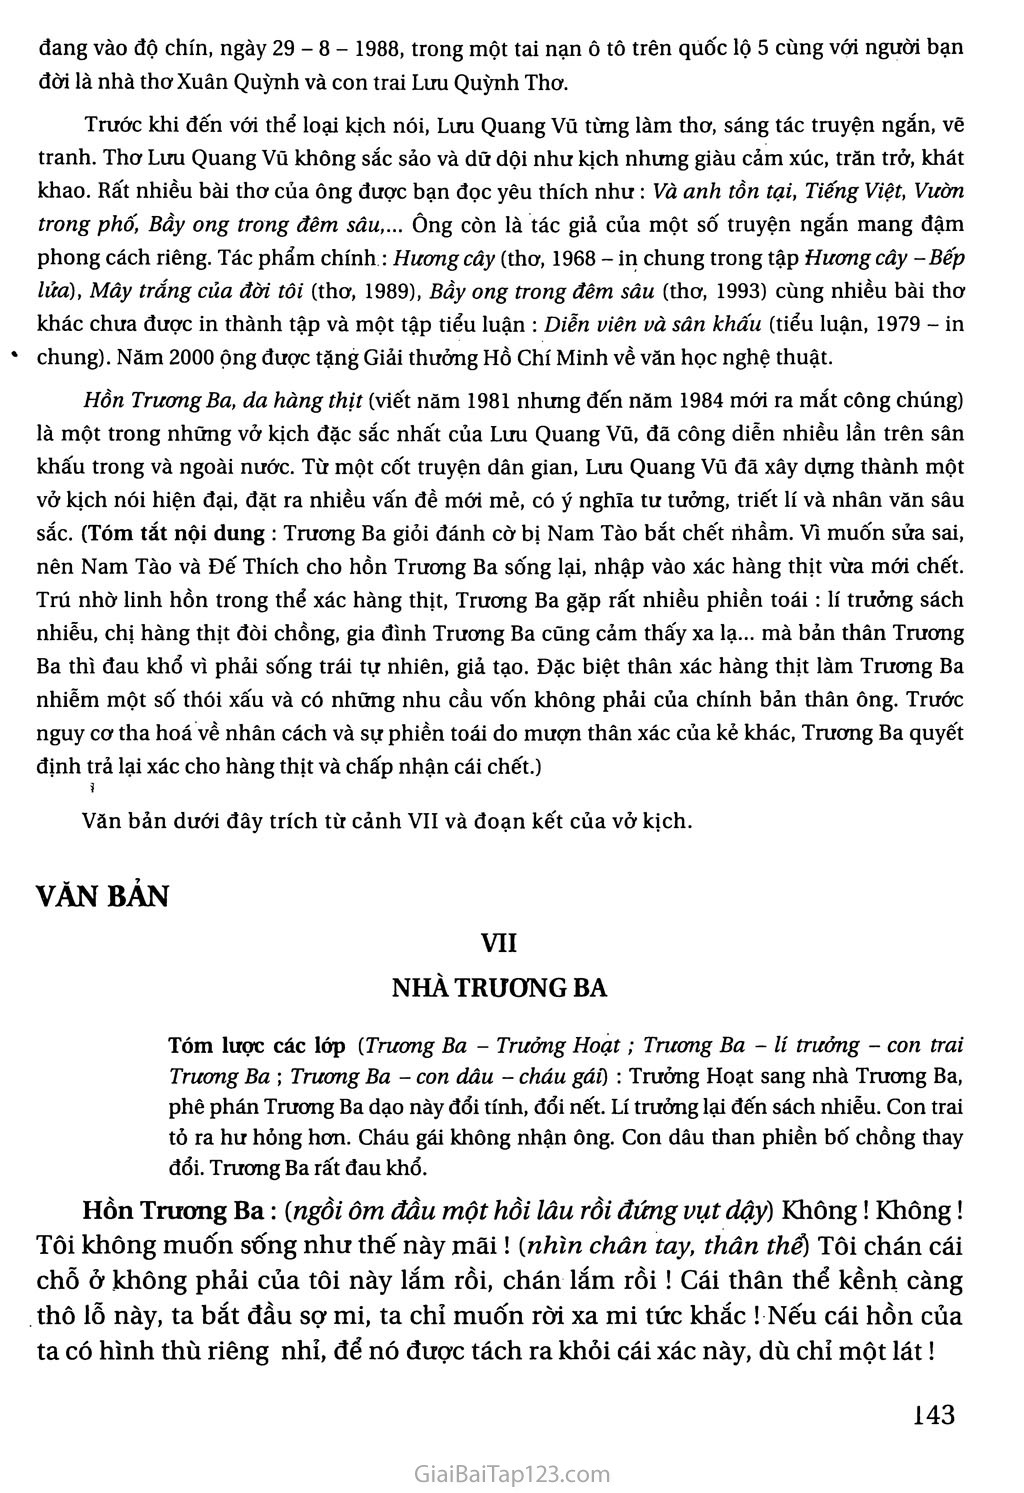 Hồn Trương Ba, da hàng thịt (trích) trang 2